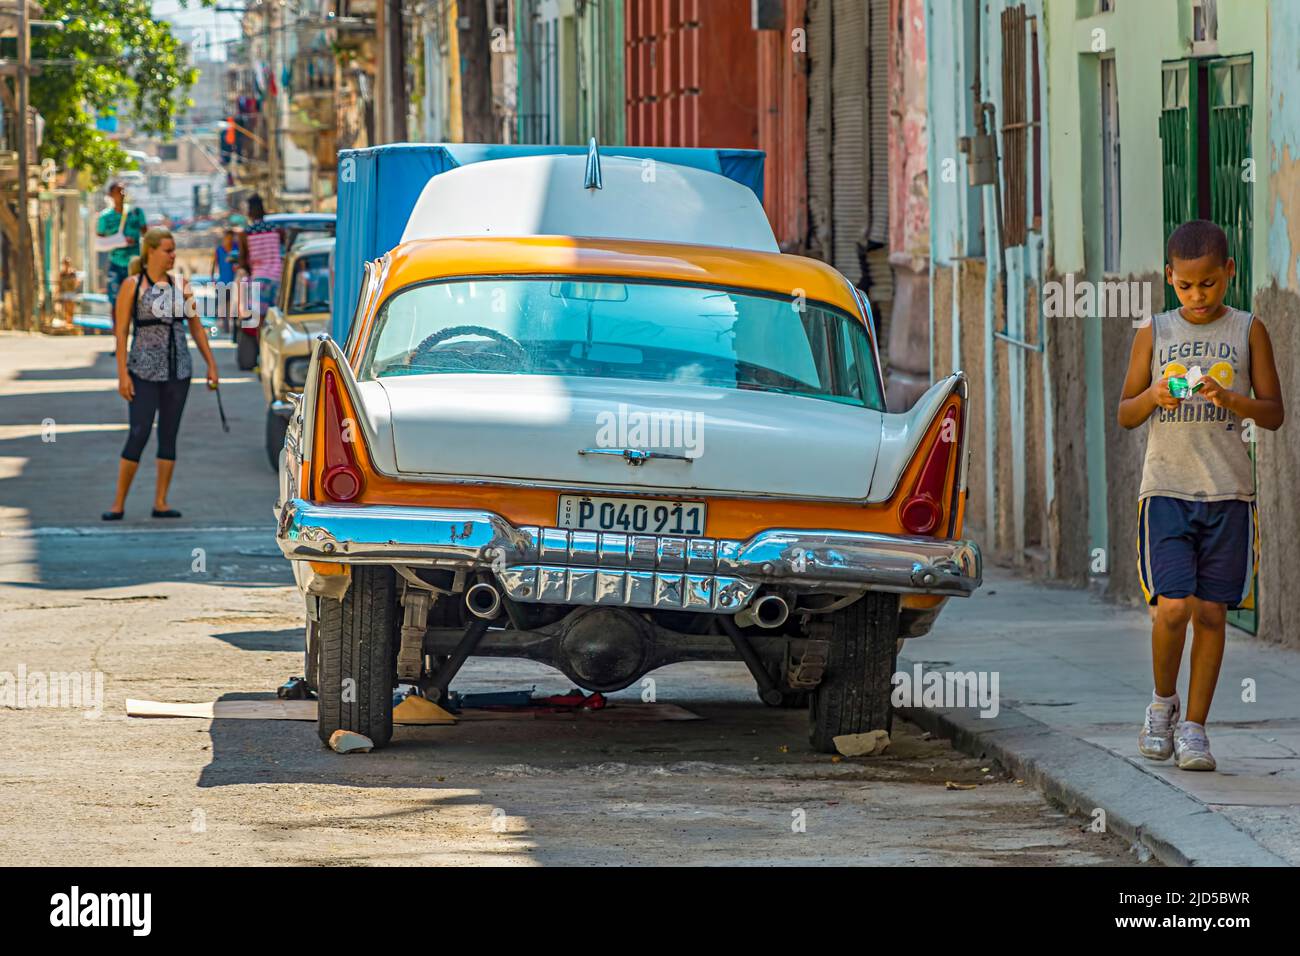 Voiture jaune et blanche d'époque à capot ouvert garée dans une rue de la vieille Havane, Cuba Banque D'Images